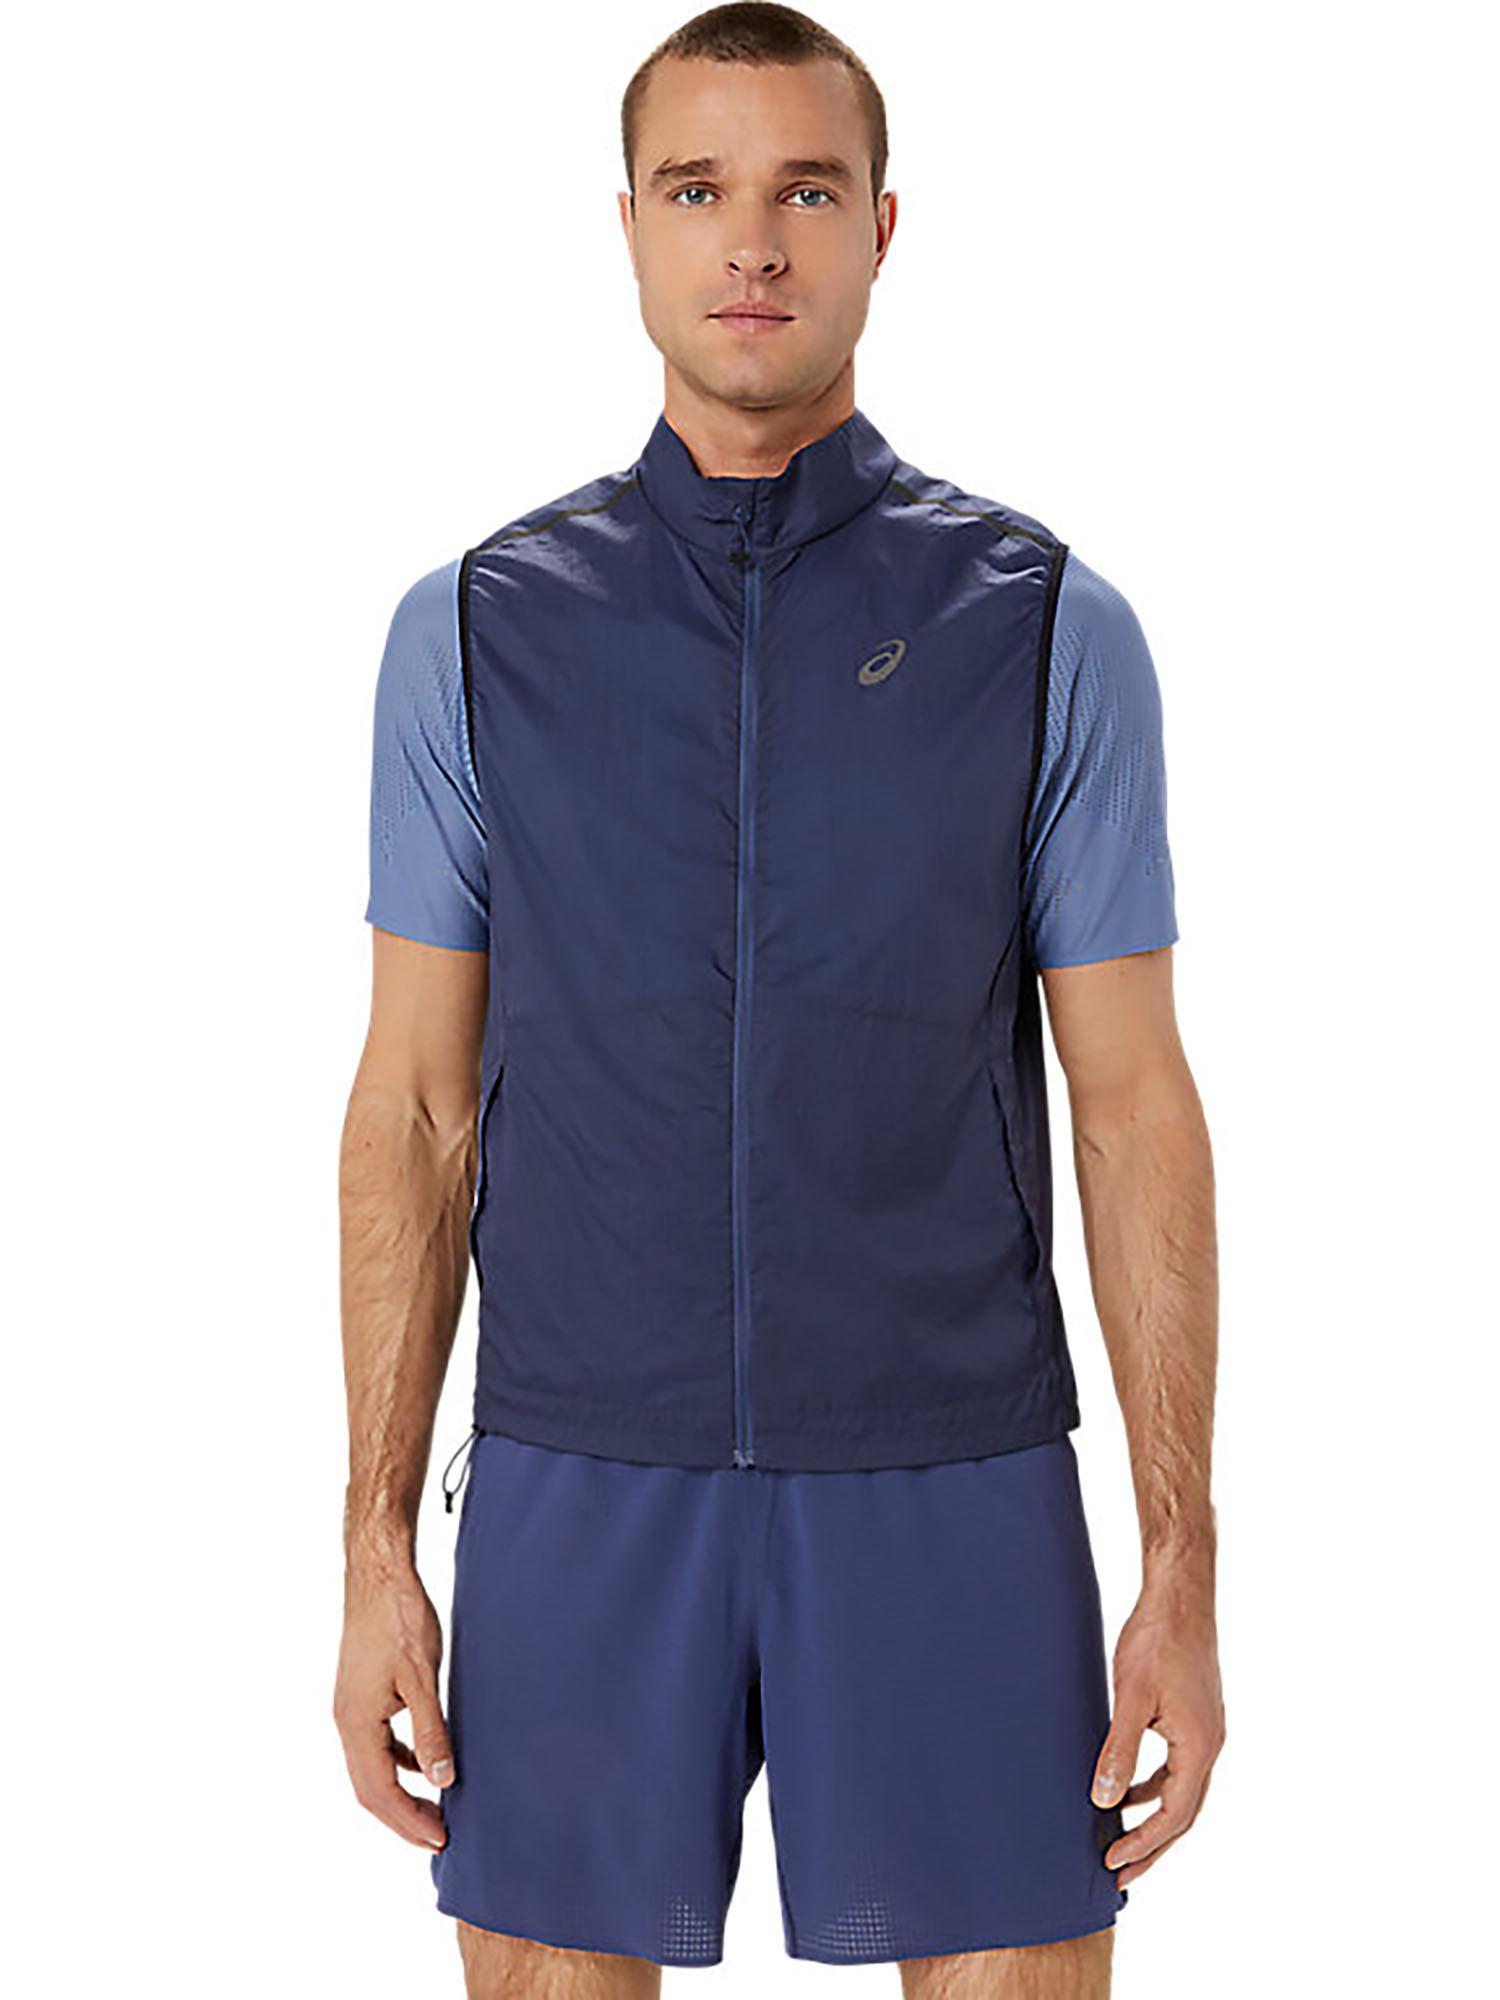 meta-run-packable-men-blue-vest-jacket